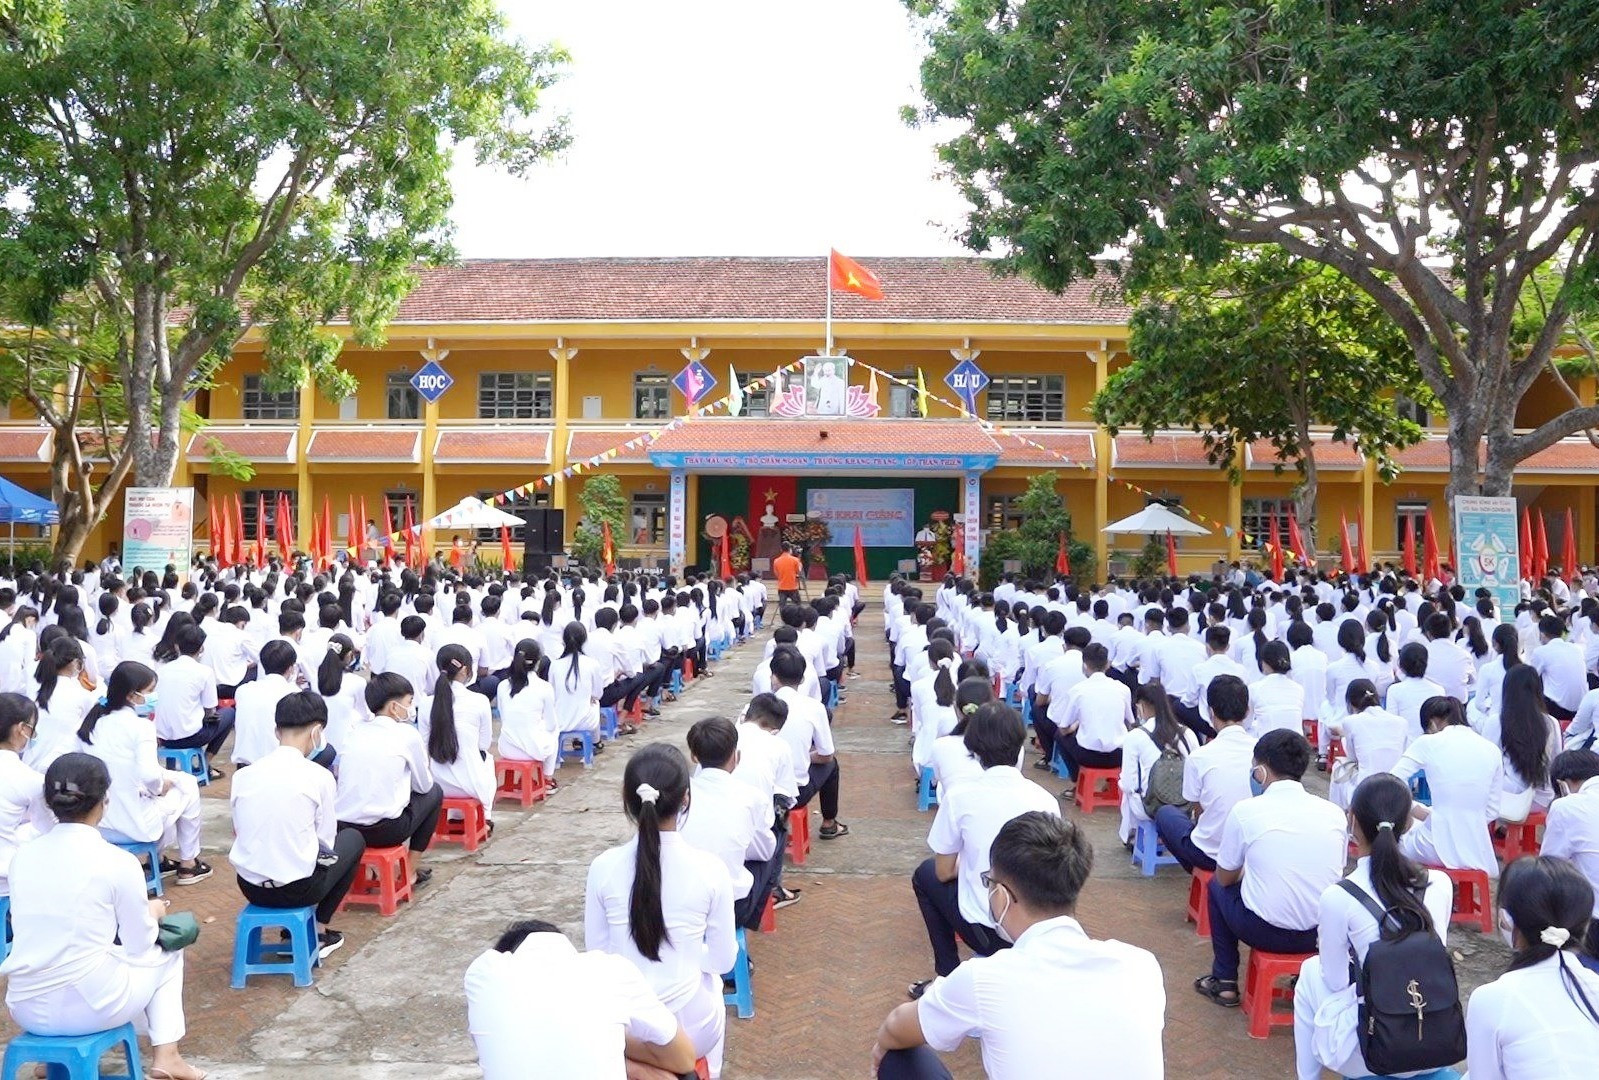 Quang cảnh lễ khai giảng tại trường THPT Nguyễn Trãi (Hội An). Ảnh: Q.T